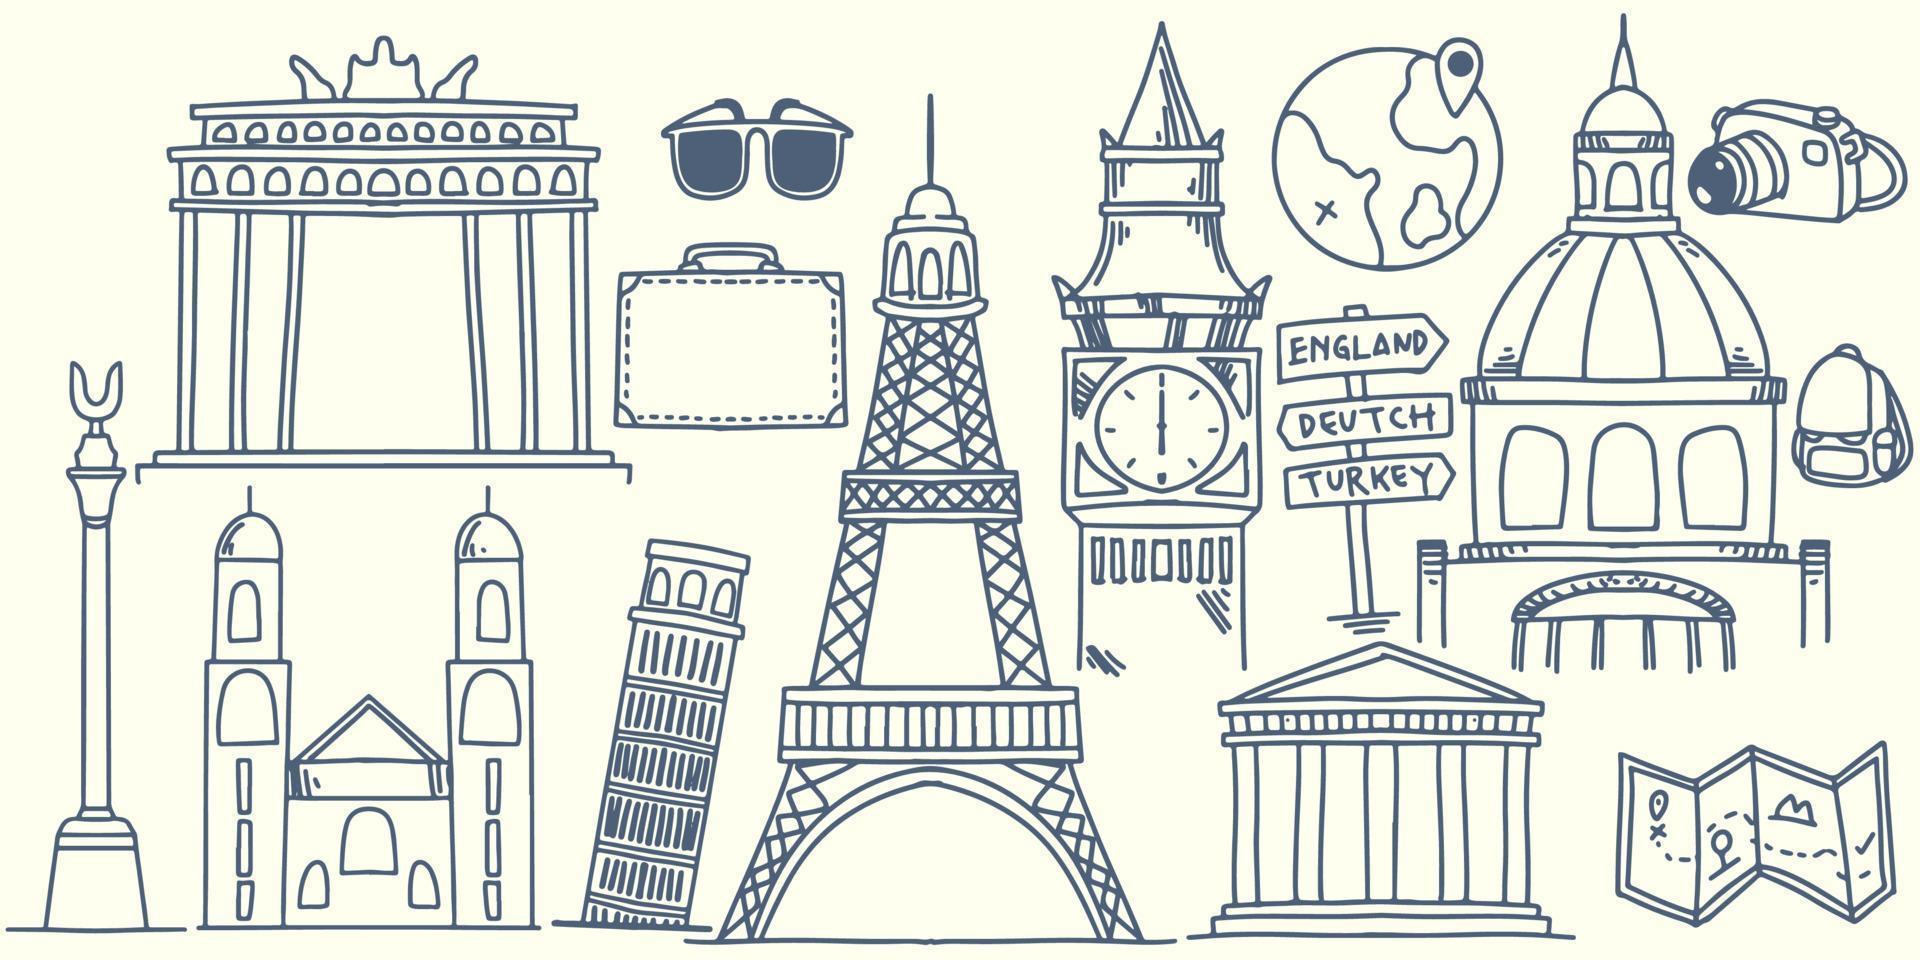 disegno a mano doodle elementi di viaggio in europa con attrezzatura turistica vettore